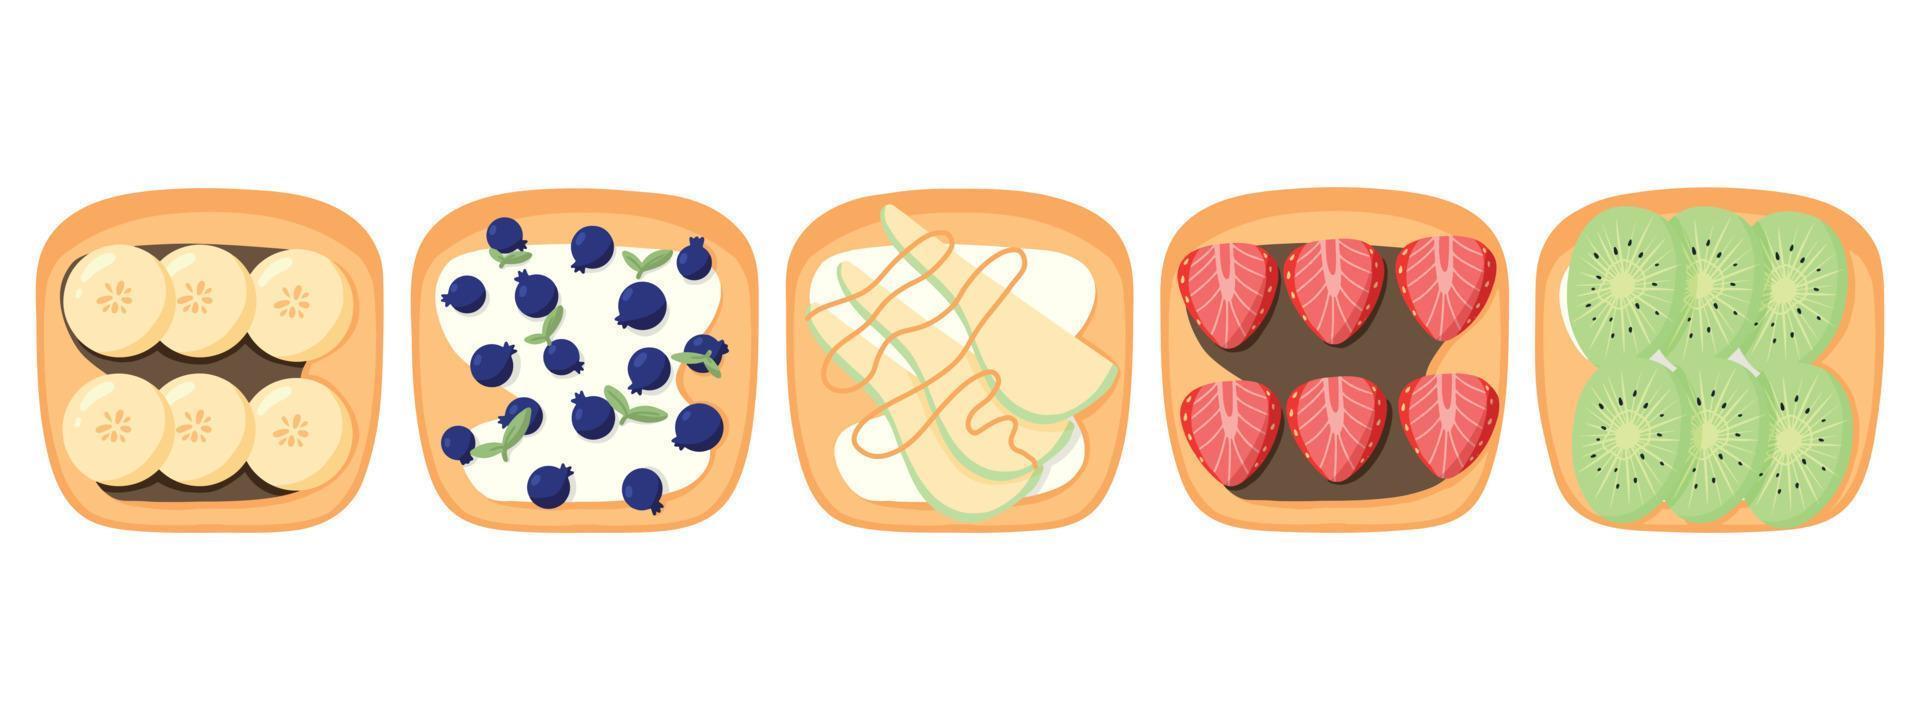 um conjunto de sanduíches com frutas e bagas. torrada doce com banana, morango, pêra, mirtilo e kiwi.vector illustration.healthy pequenos-almoços. vetor